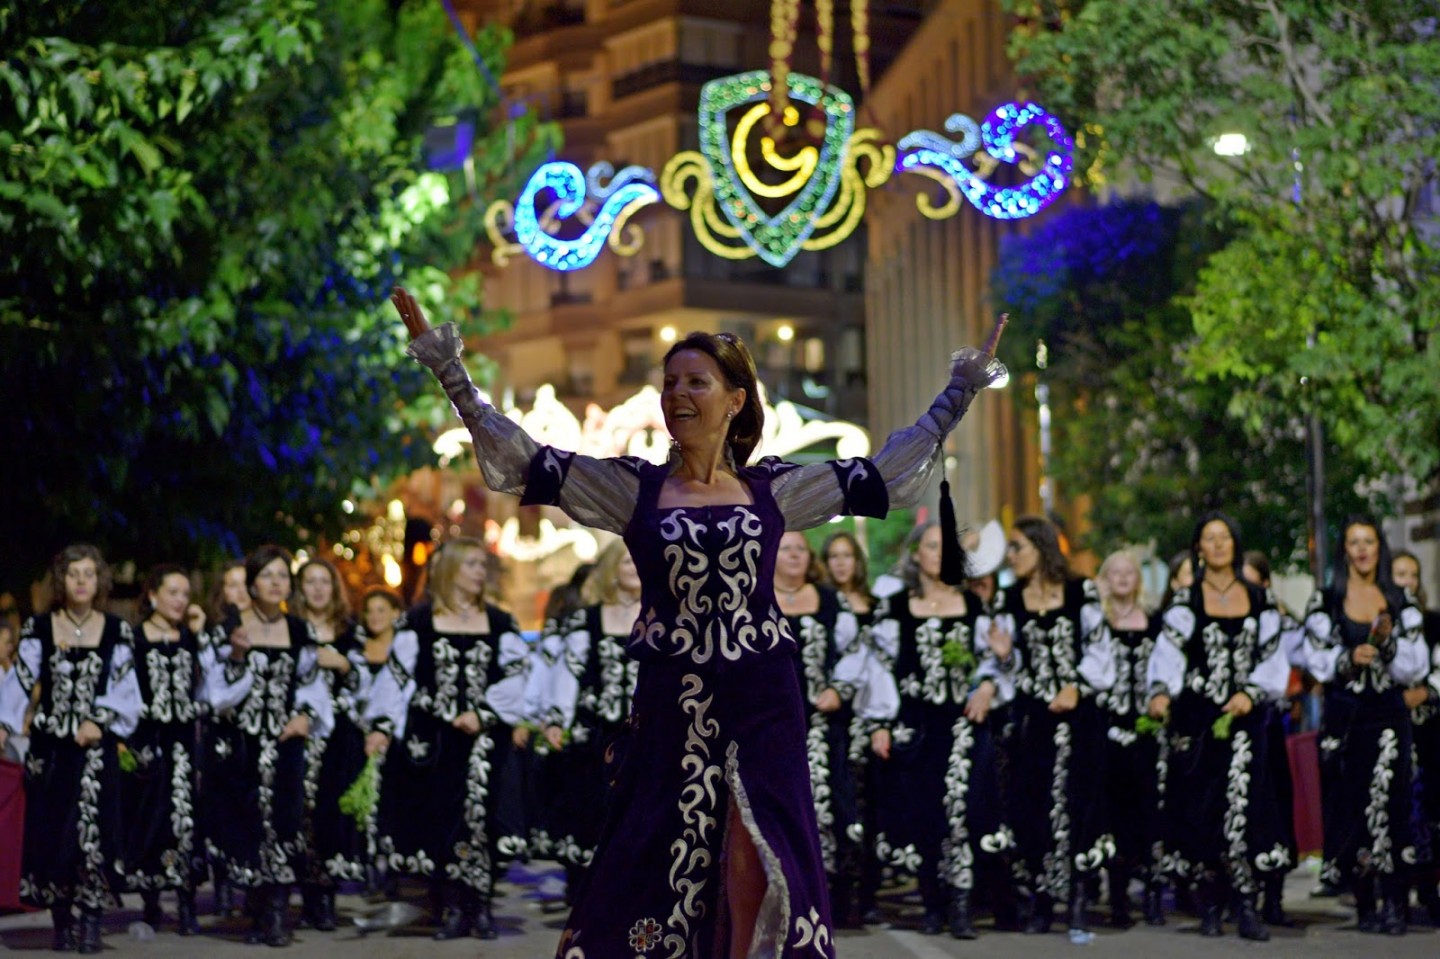 Fiestas de Moros y Cristianos festival in Villena